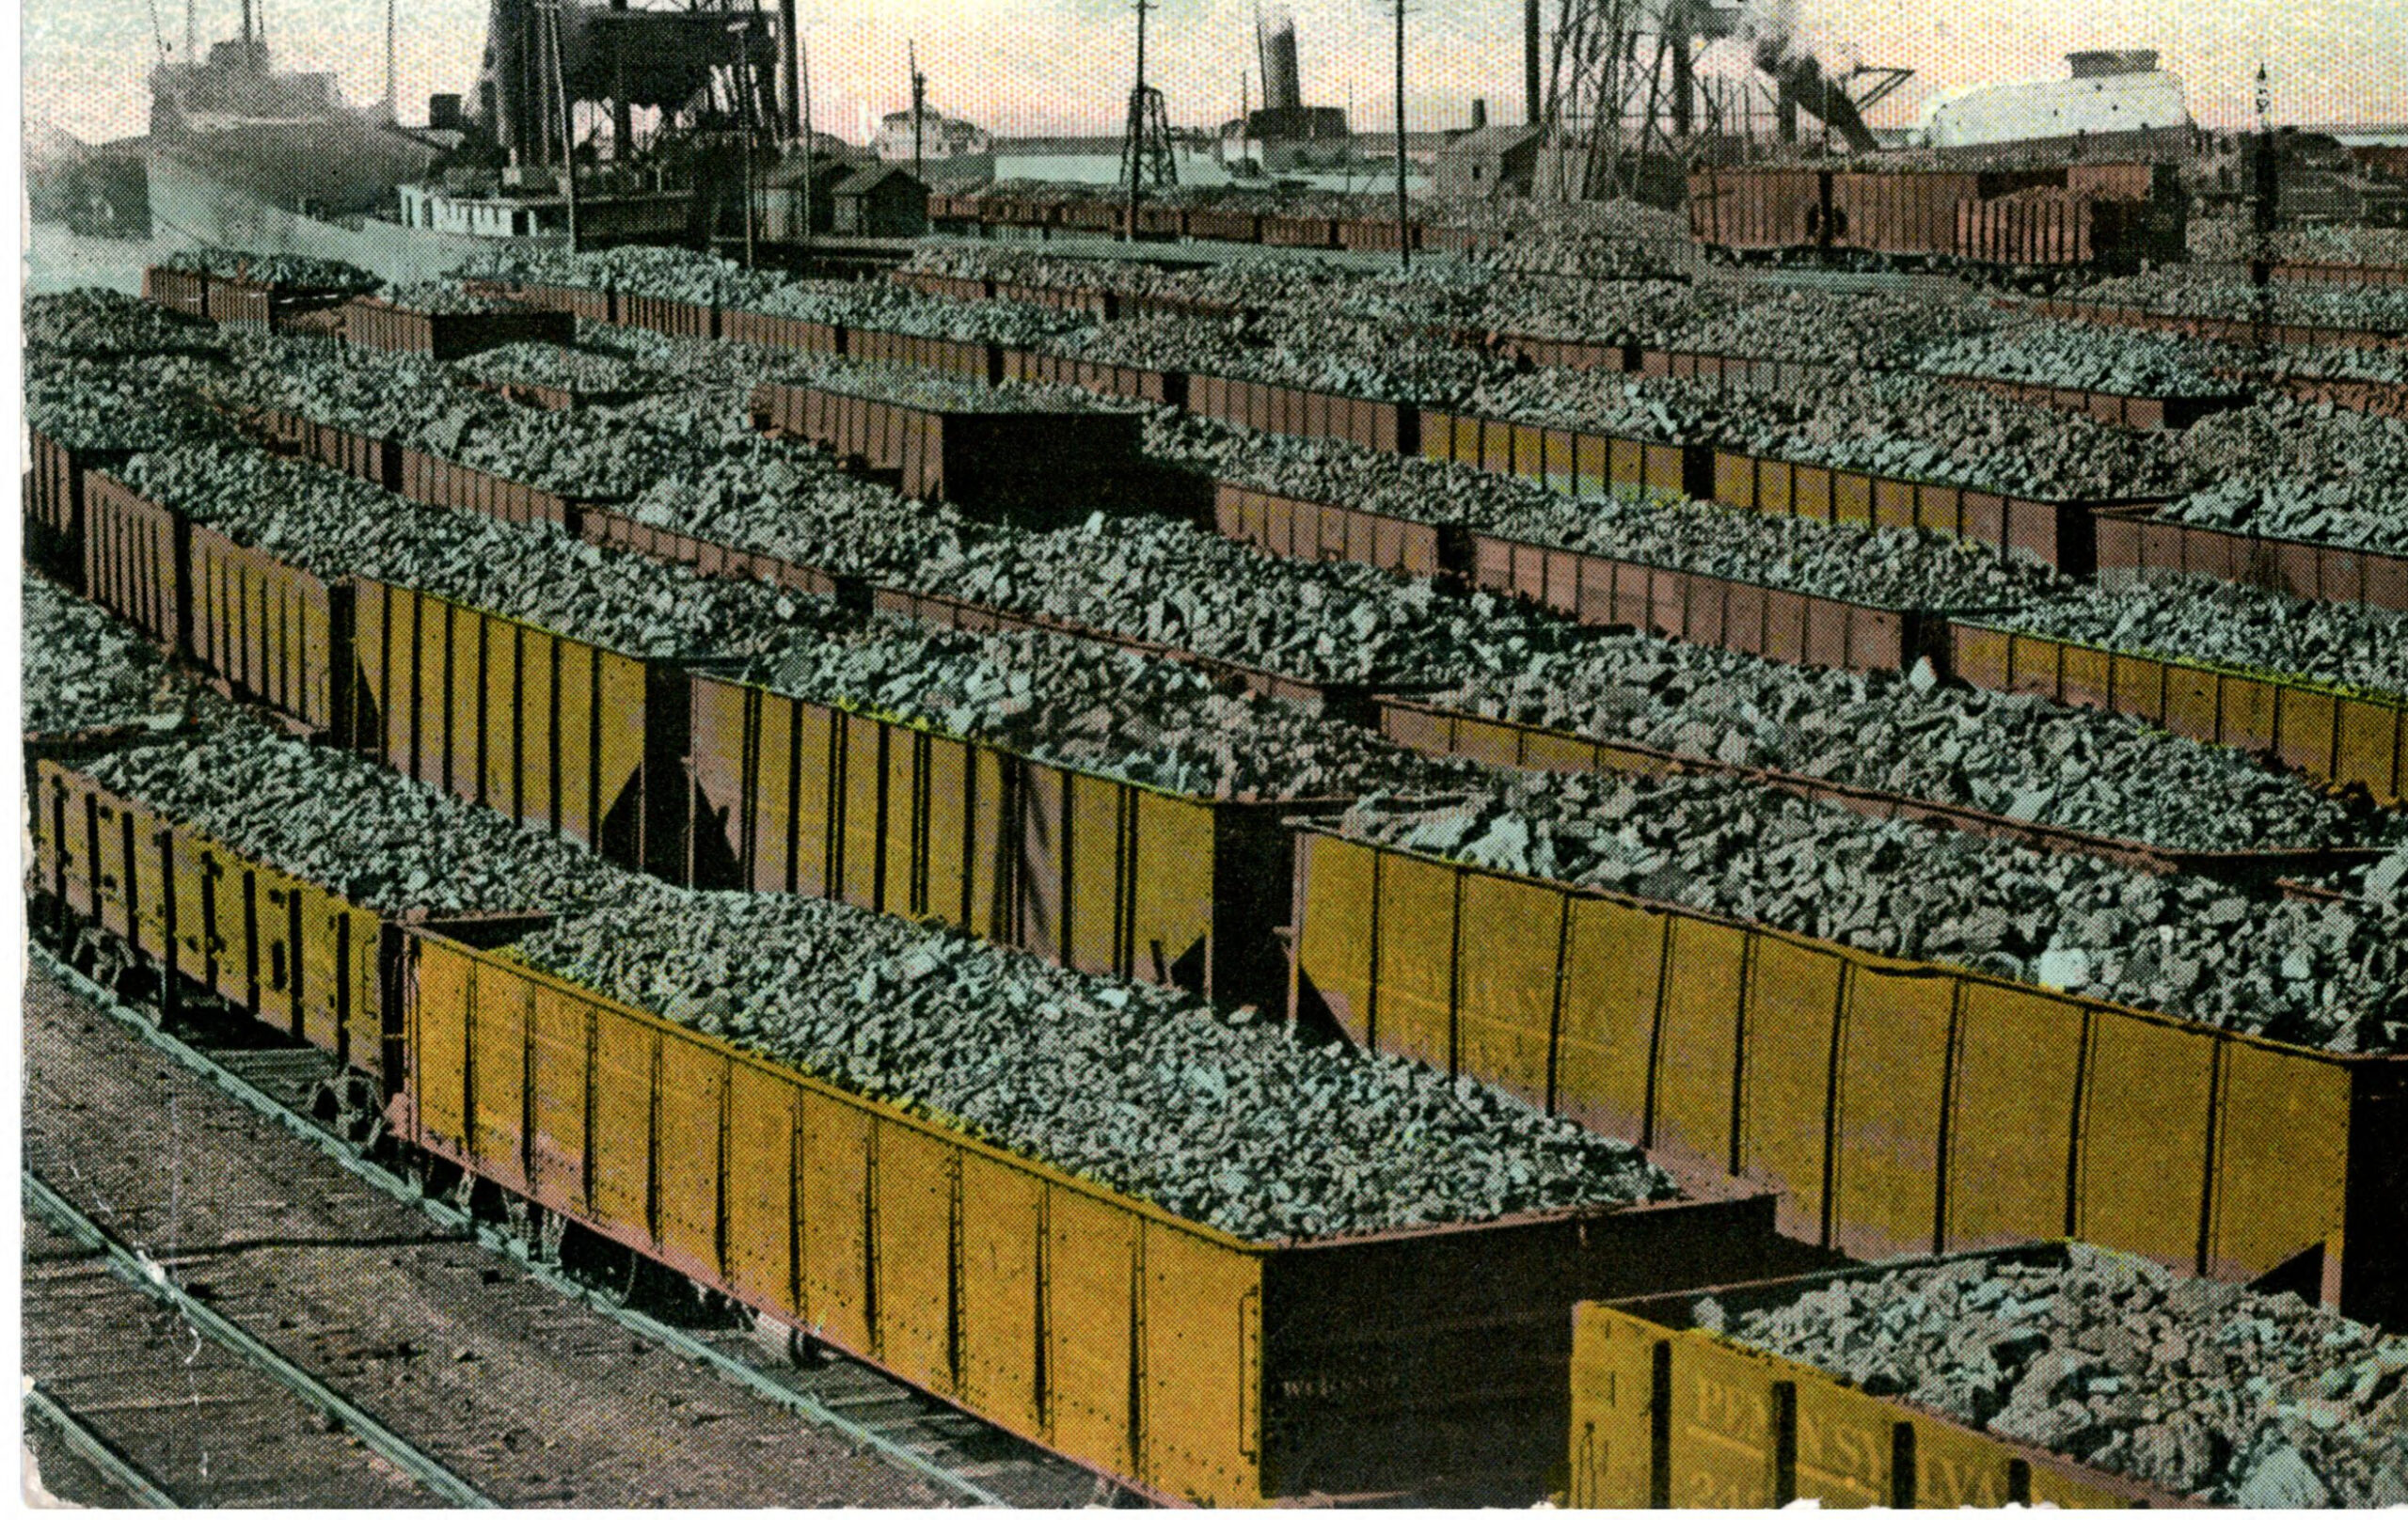 Coal docks at Cleveland, Ohio